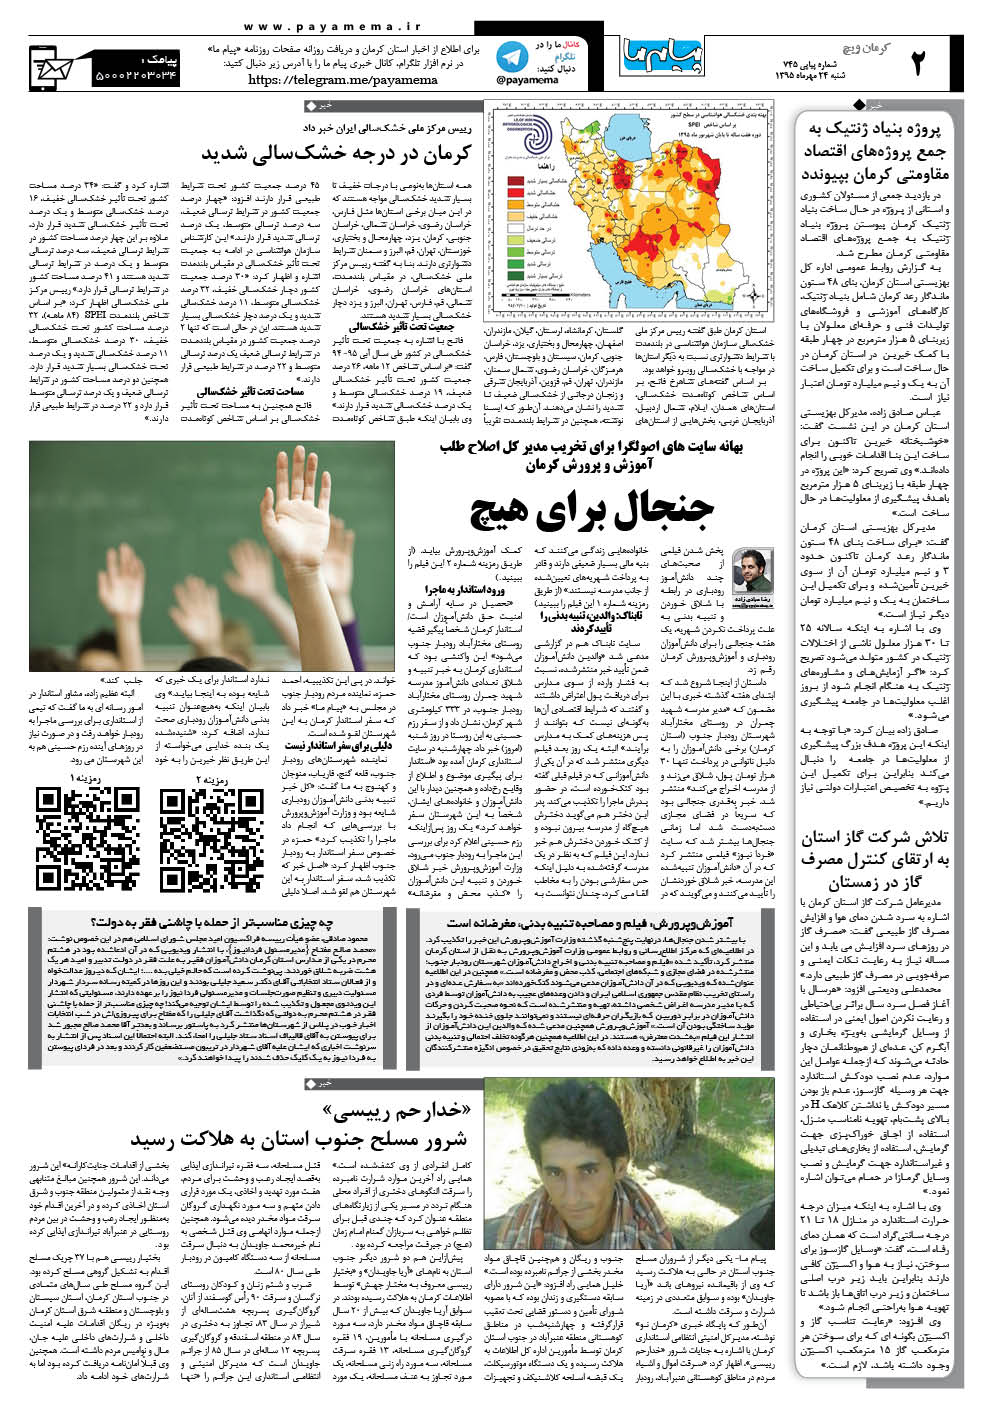 صفحه کرمان ویج شماره 745 روزنامه پیام ما